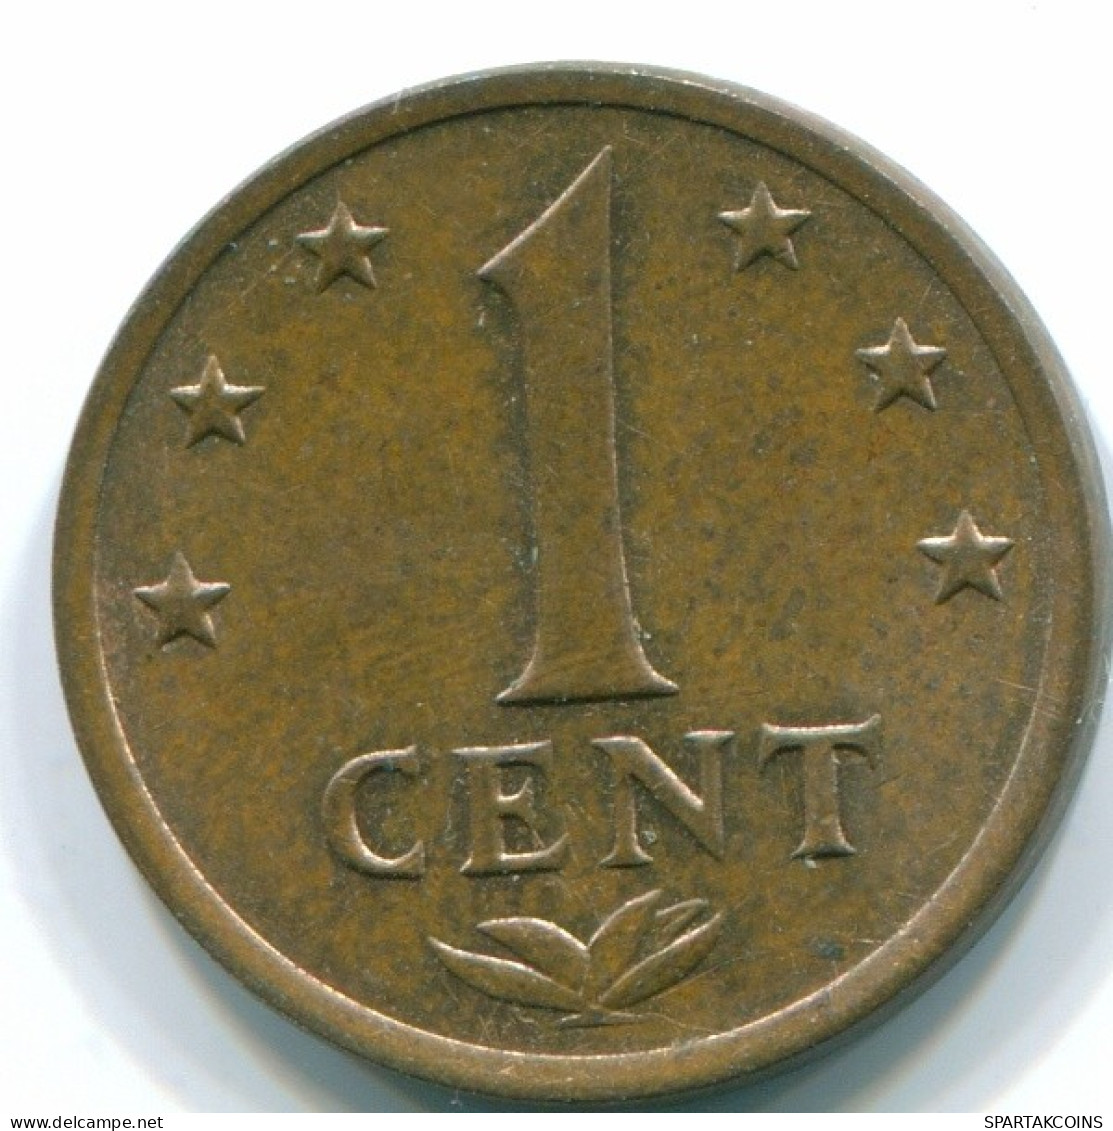 1 CENT 1971 NIEDERLÄNDISCHE ANTILLEN Bronze Koloniale Münze #S10620.D.A - Nederlandse Antillen